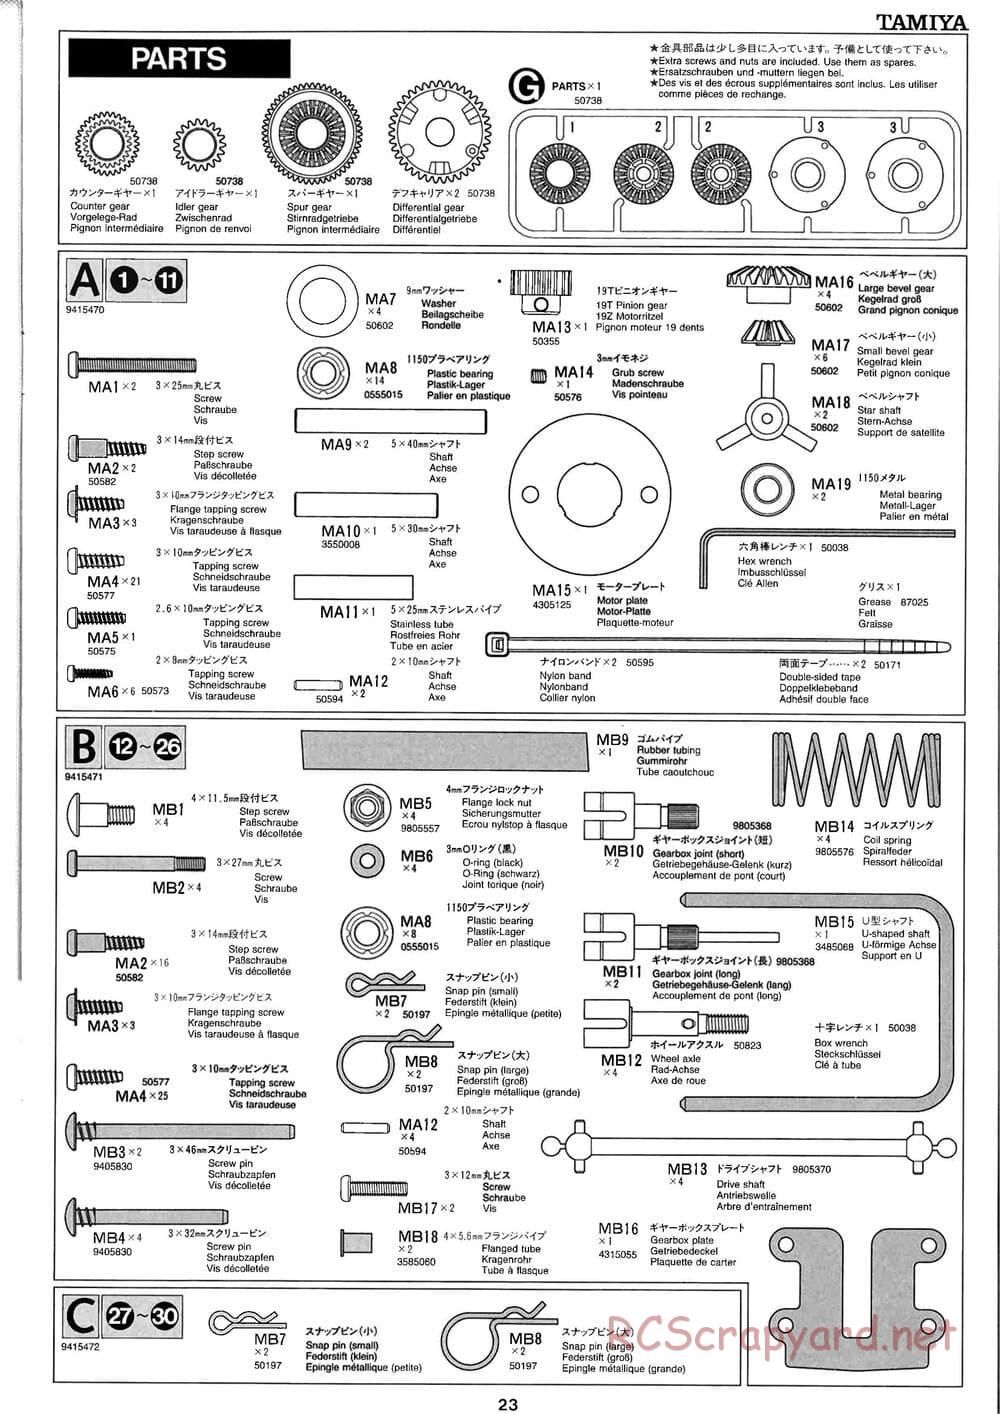 Tamiya - Baja Champ - TL-01B Chassis - Manual - Page 23